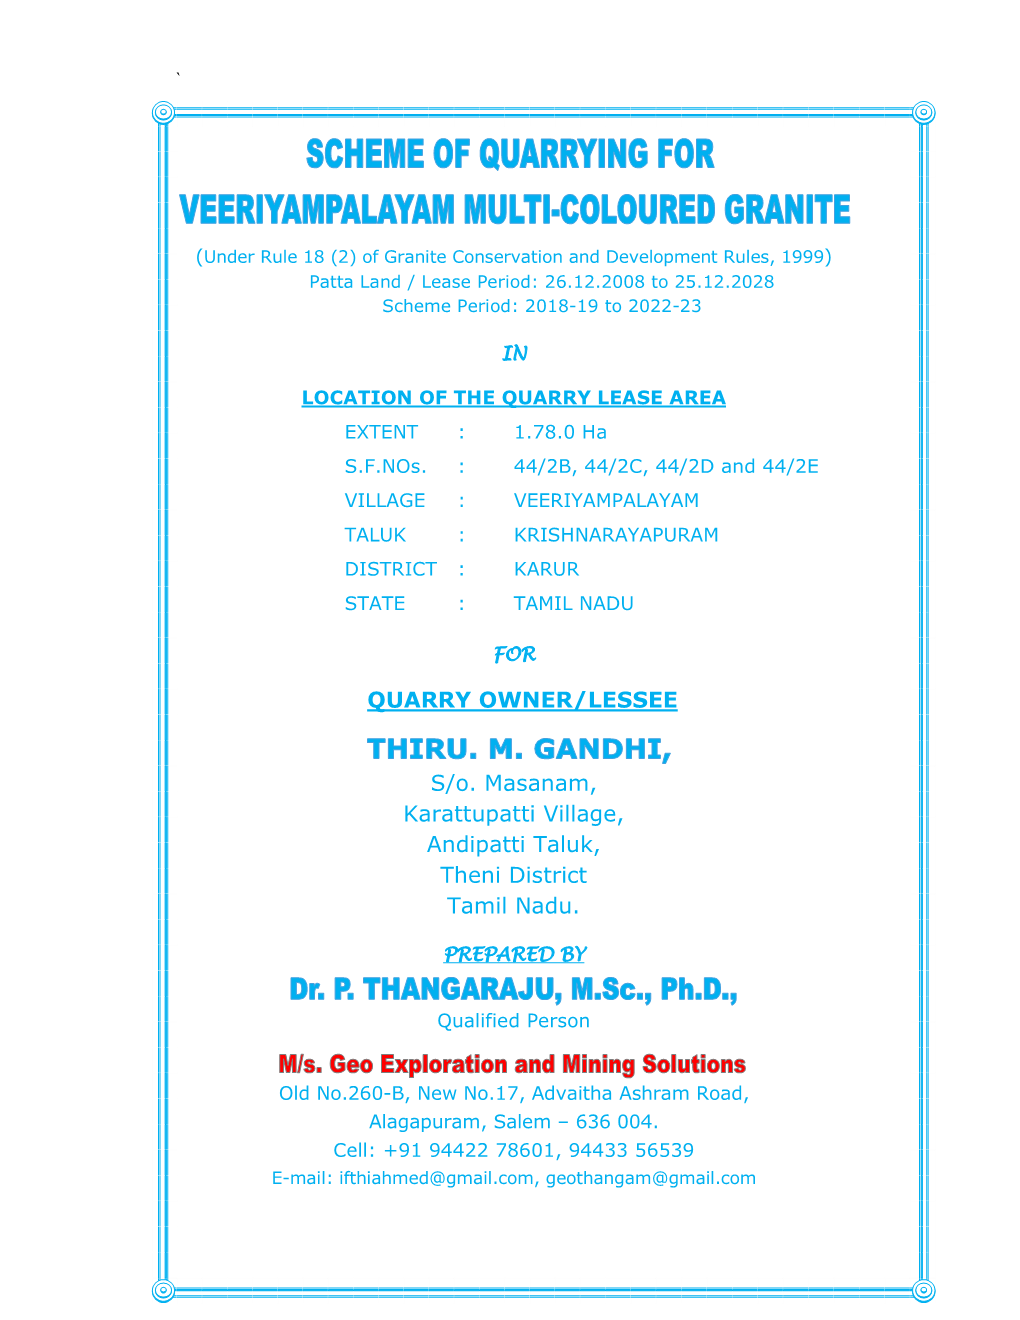 QUARRY OWNER/LESSEE S/O. Masanam, Karattupatti Village, Andipatti Taluk, Theni District Tamil Nadu